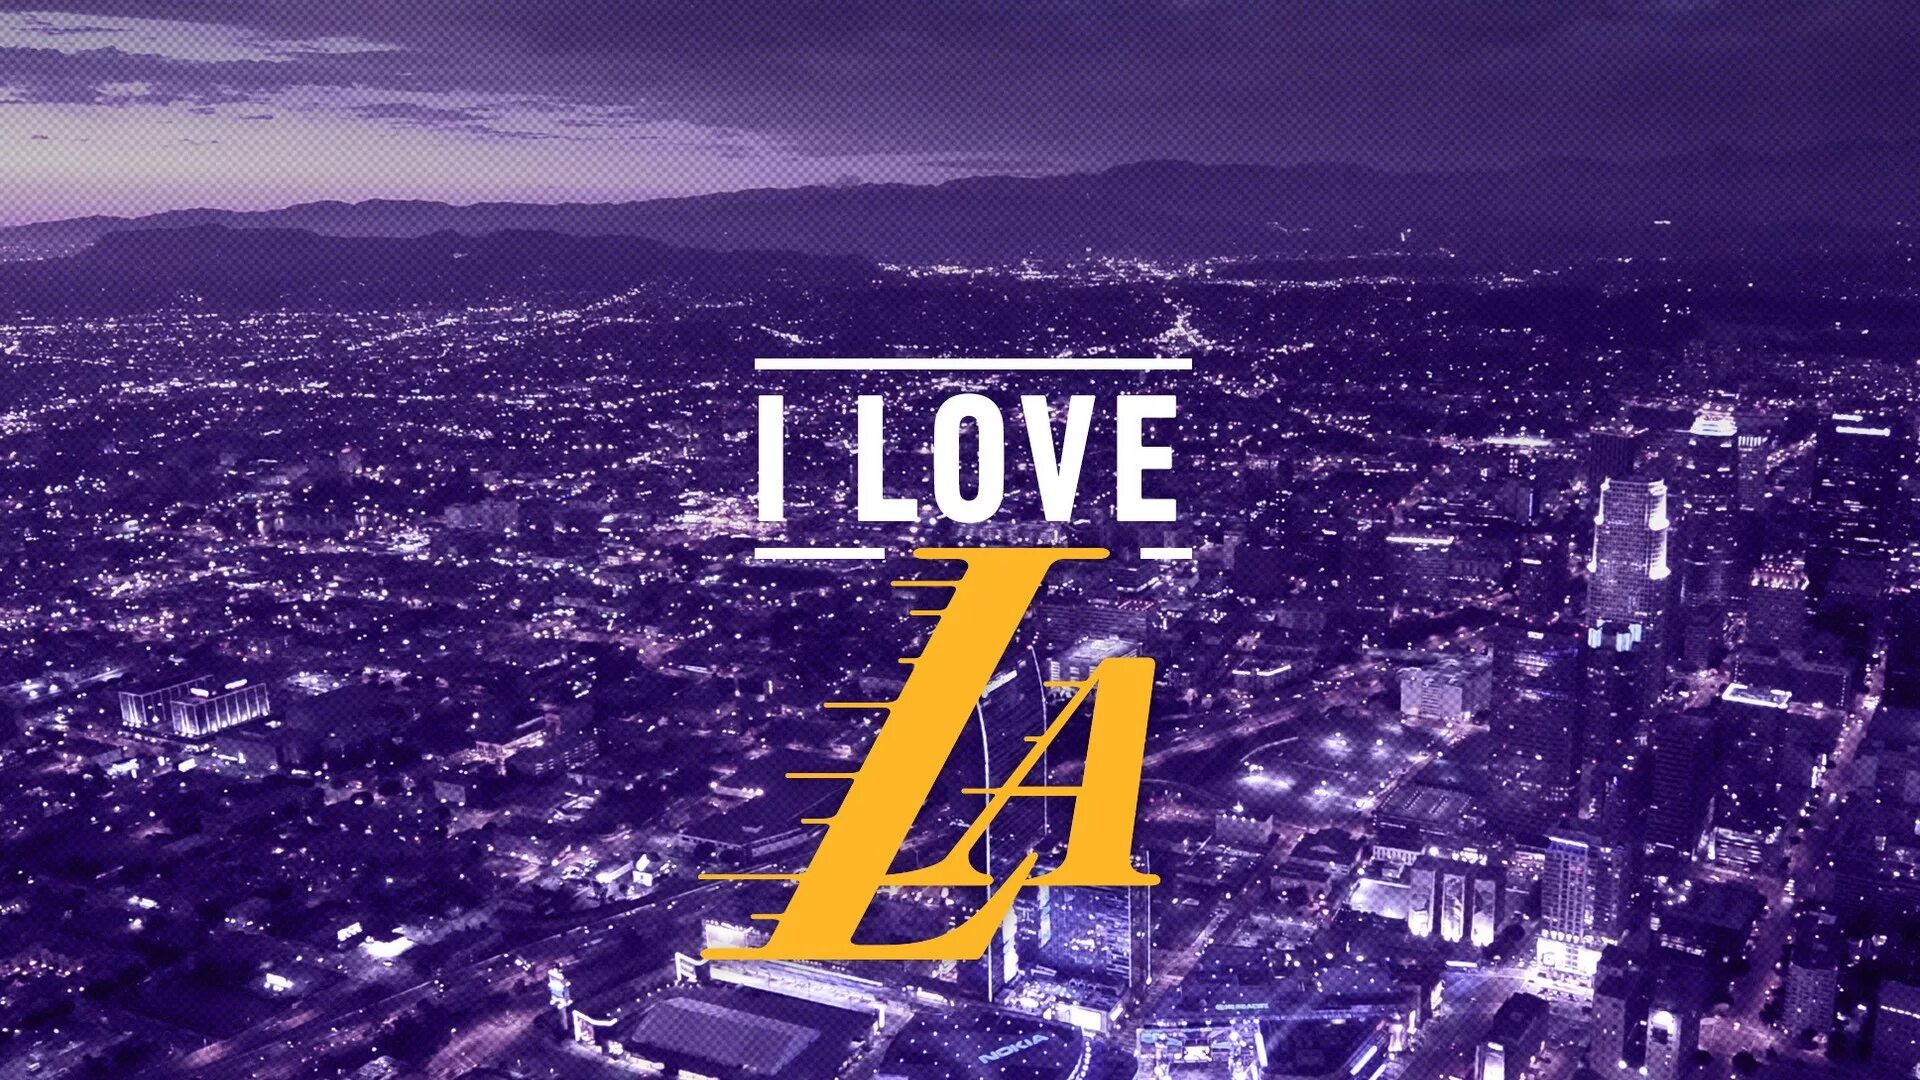 Включи лос анджелес 52 ngg. Лос-Анджелес Лейкерс обои. Лос Анджелес 1920х. Lakers обои на рабочий стол. Обои на рабочий стол Лос Анджелес.